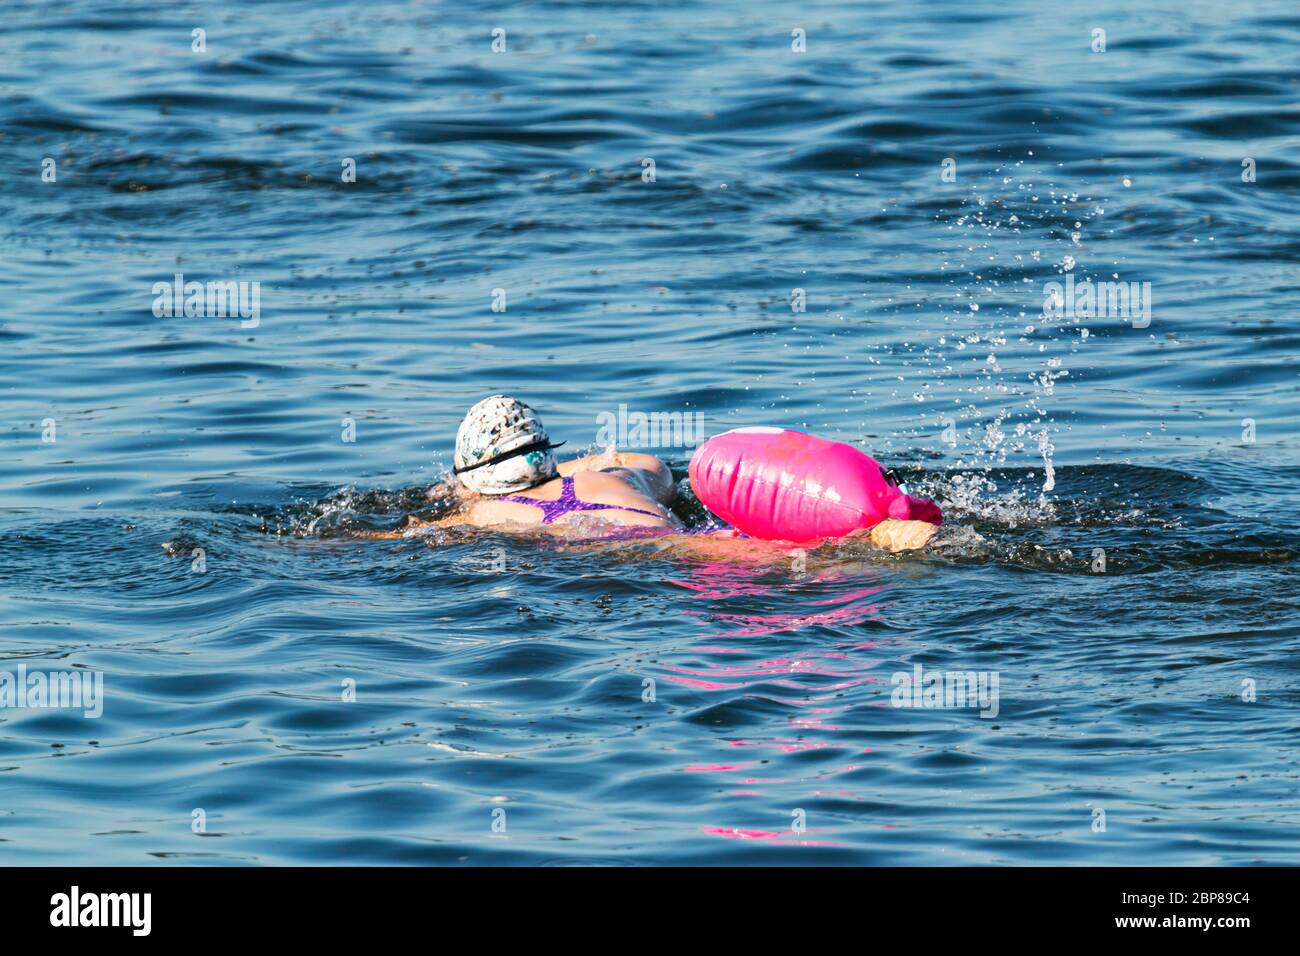 Eine Frau, die für einen Triathlon trainiert, schwimmt im blauen Wasser mit einer rosa Schwimmvorrichtung, die zur Sicherheit an ihrer Taille festgebunden ist. Stockfoto